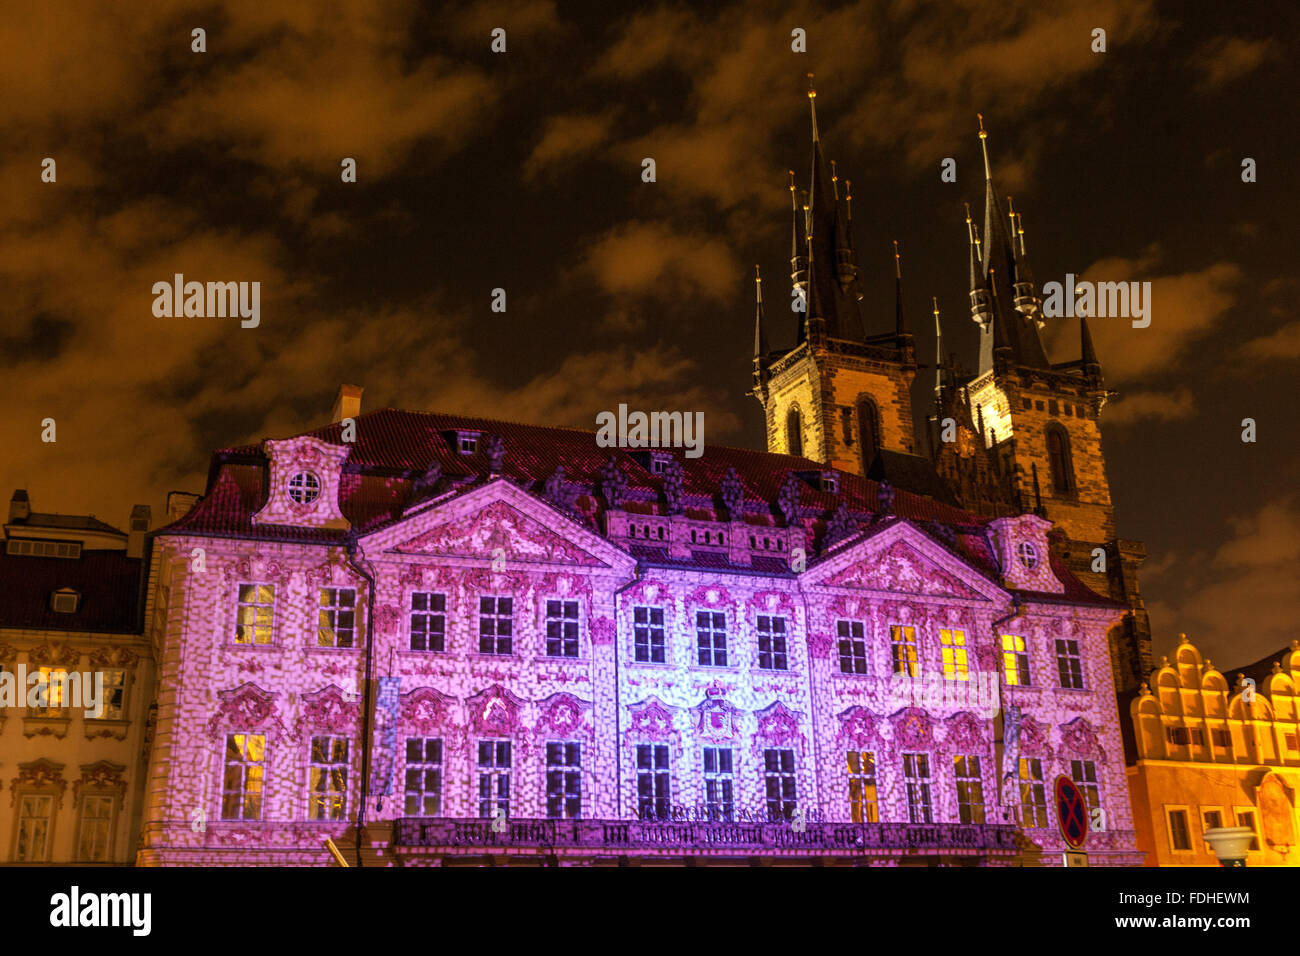 Palazzo di Praga, sede della Galleria Nazionale, Palazzo Kinsky di Praga in stile rococò illuminato durante il Festival della luce di Praga, Piazza della Città Vecchia, Chiesa di Tyn Foto Stock